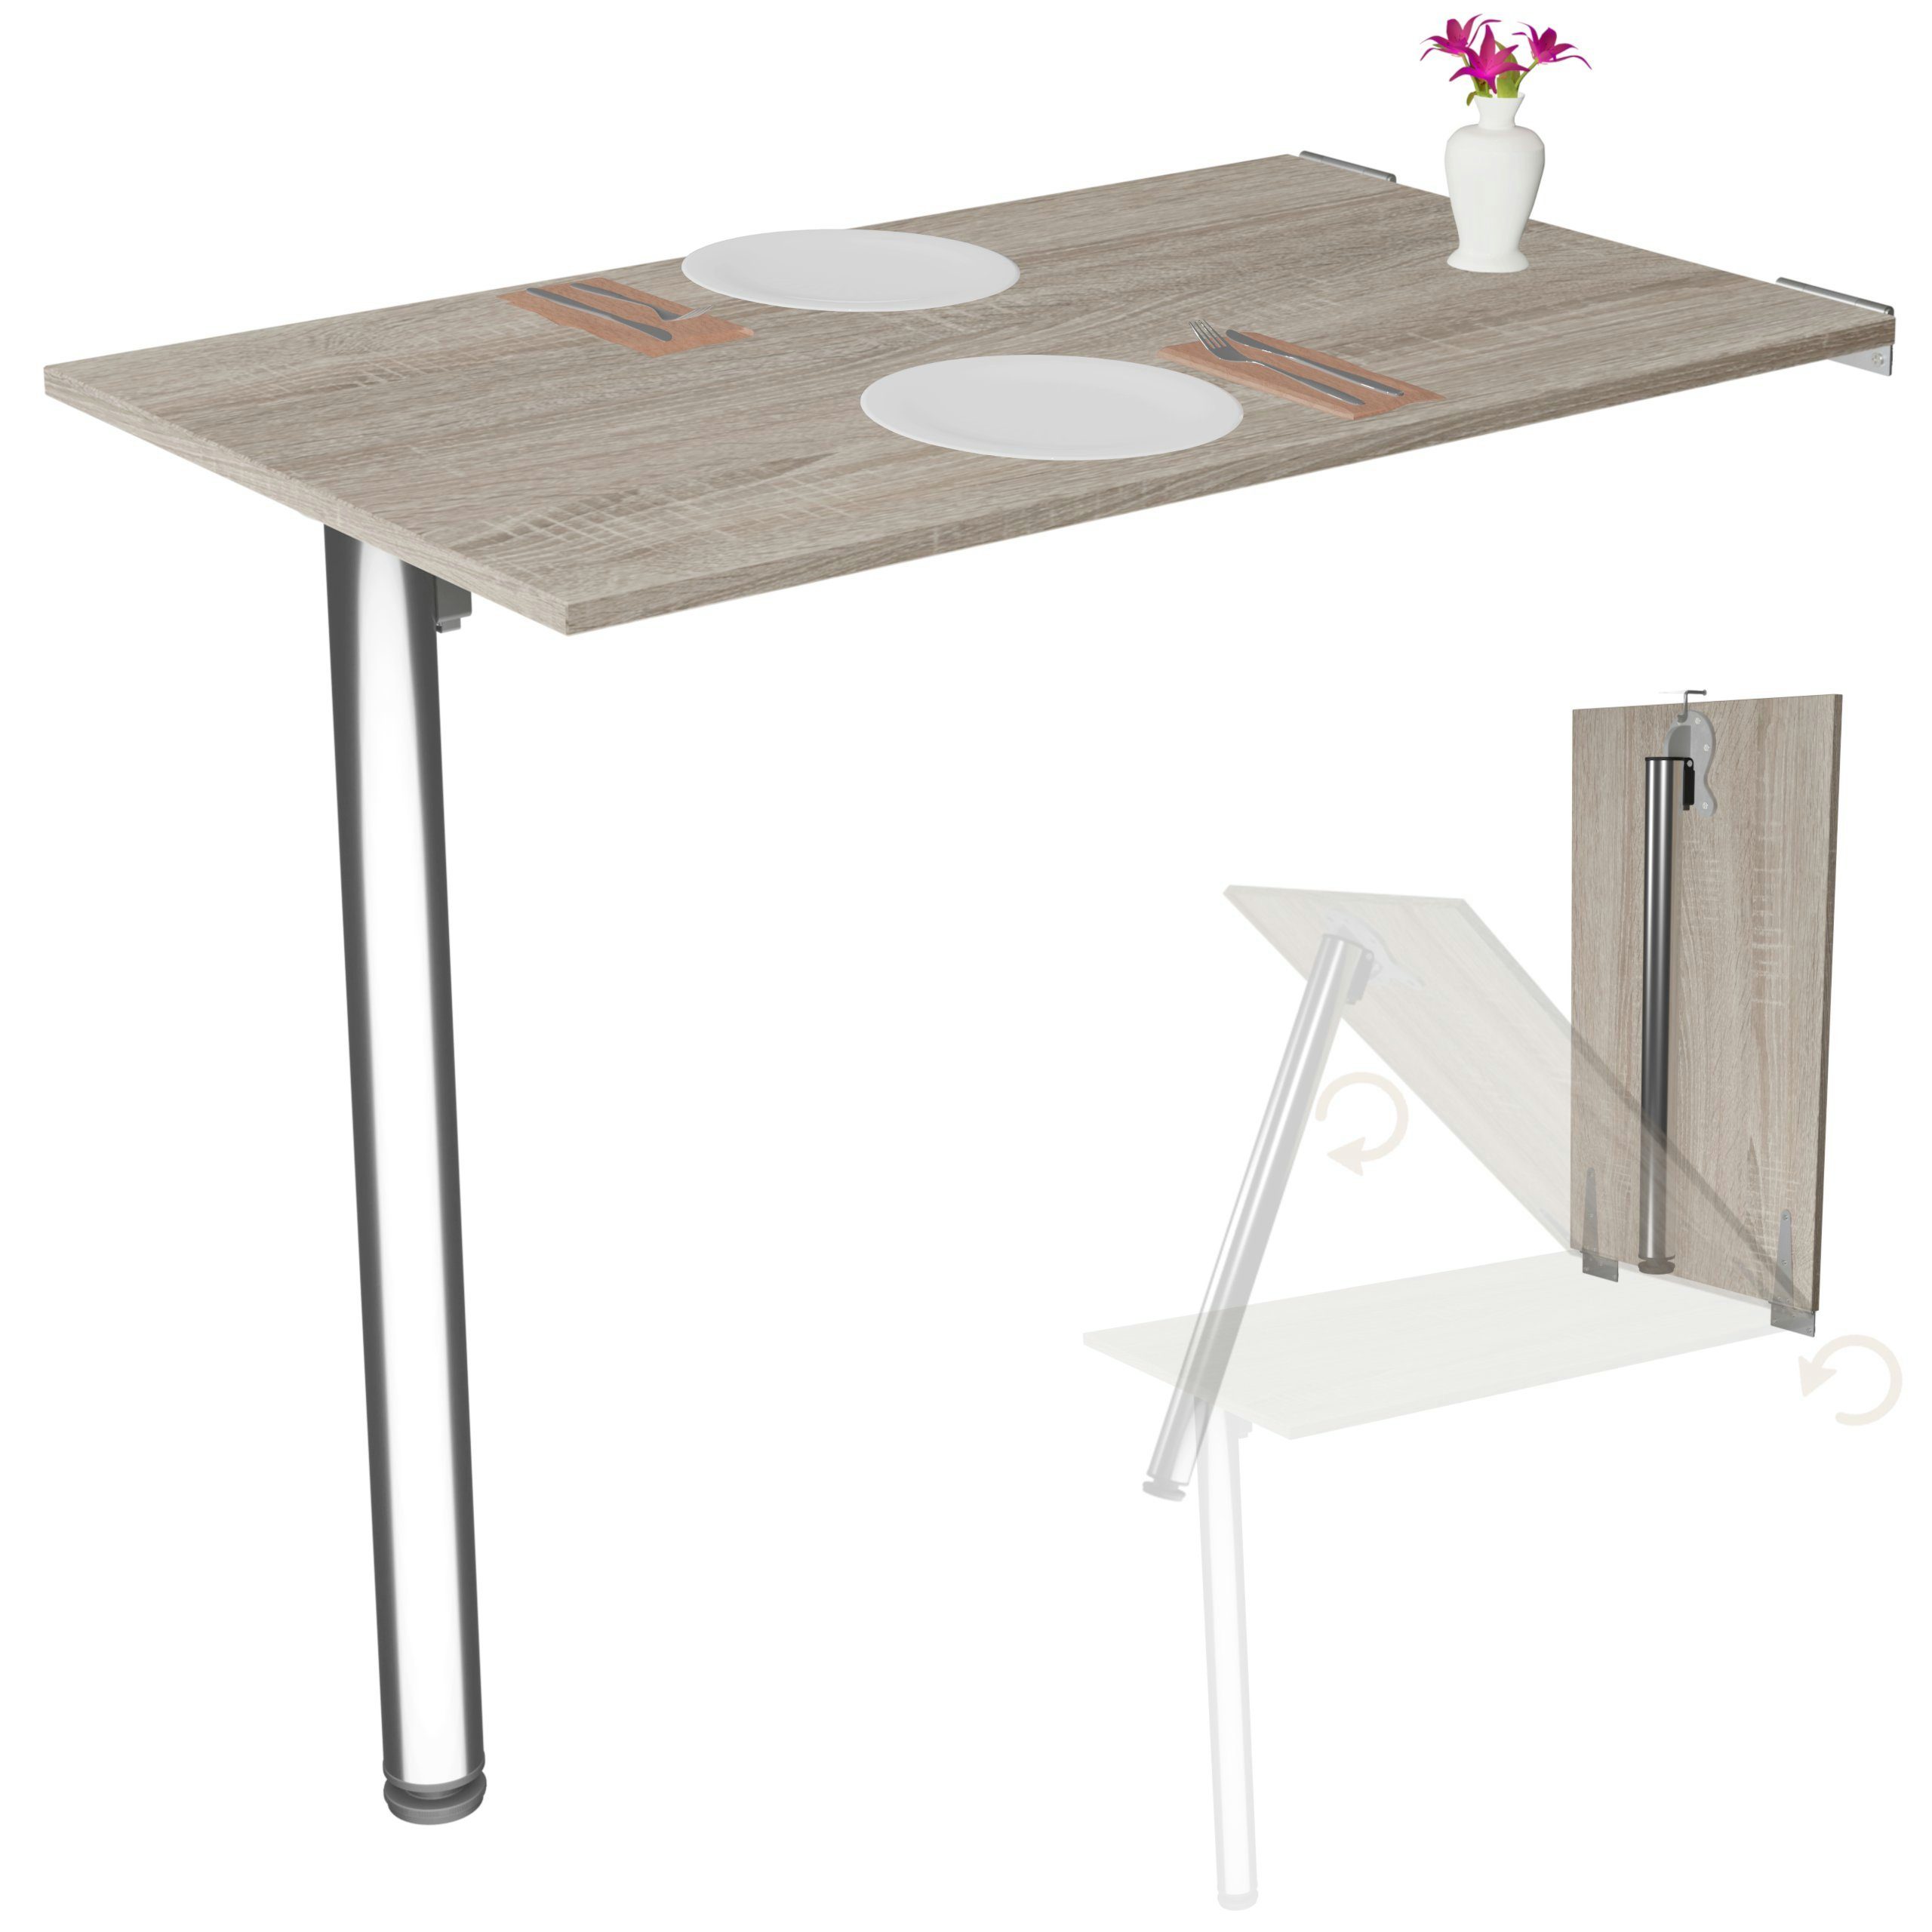 KDR Produktgestaltung Klapptisch 80x50 Wandklapptisch Esstisch Küchentisch Schreibtisch Wand Tisch, Sonoma Eiche